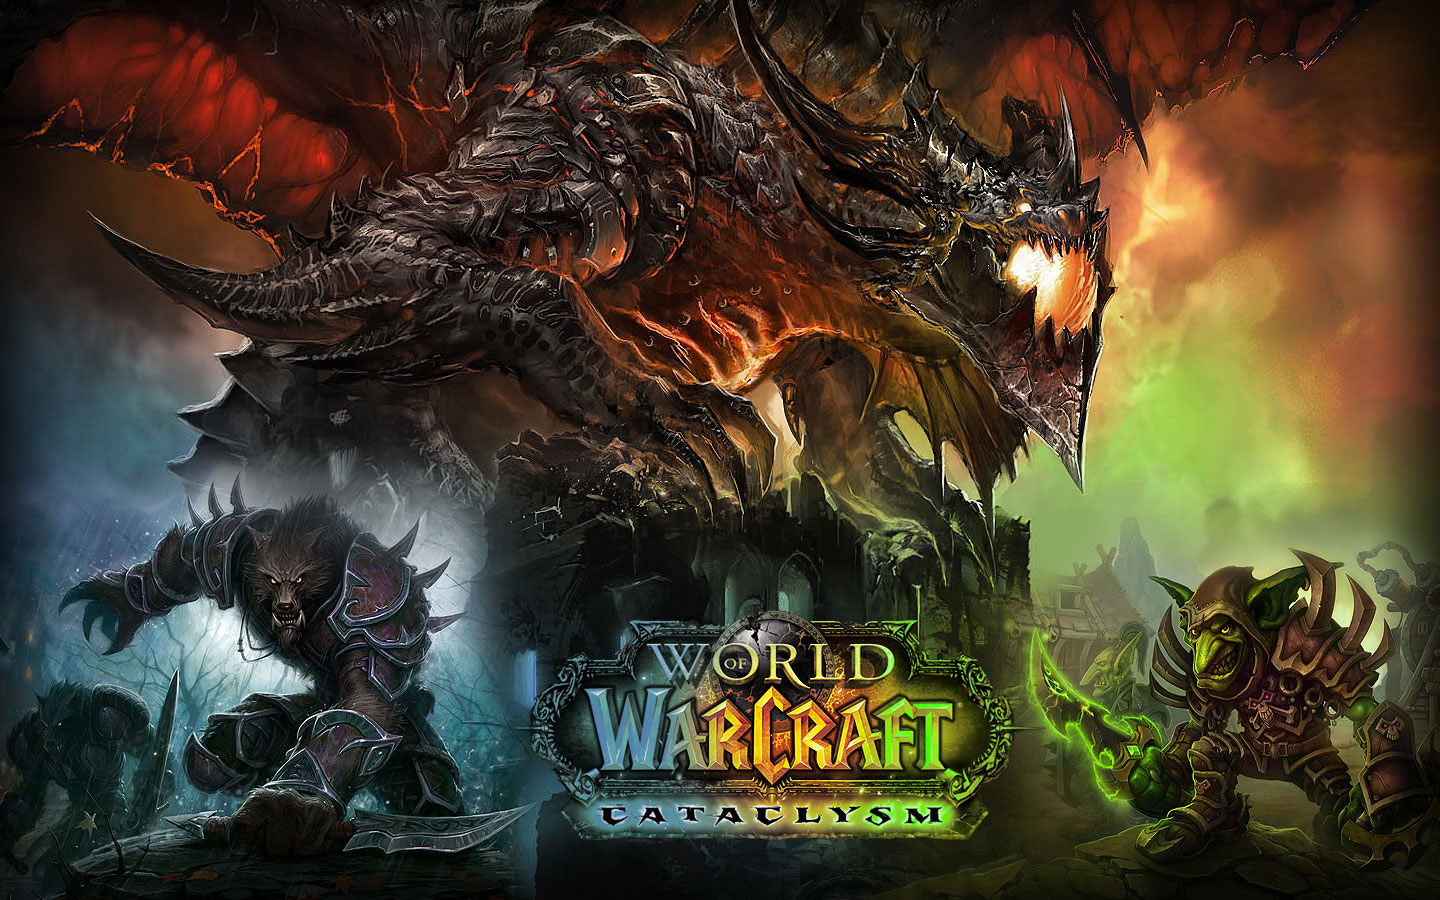 Widescreen Wallpaper Of World Warcraft Cataclysm Video Game